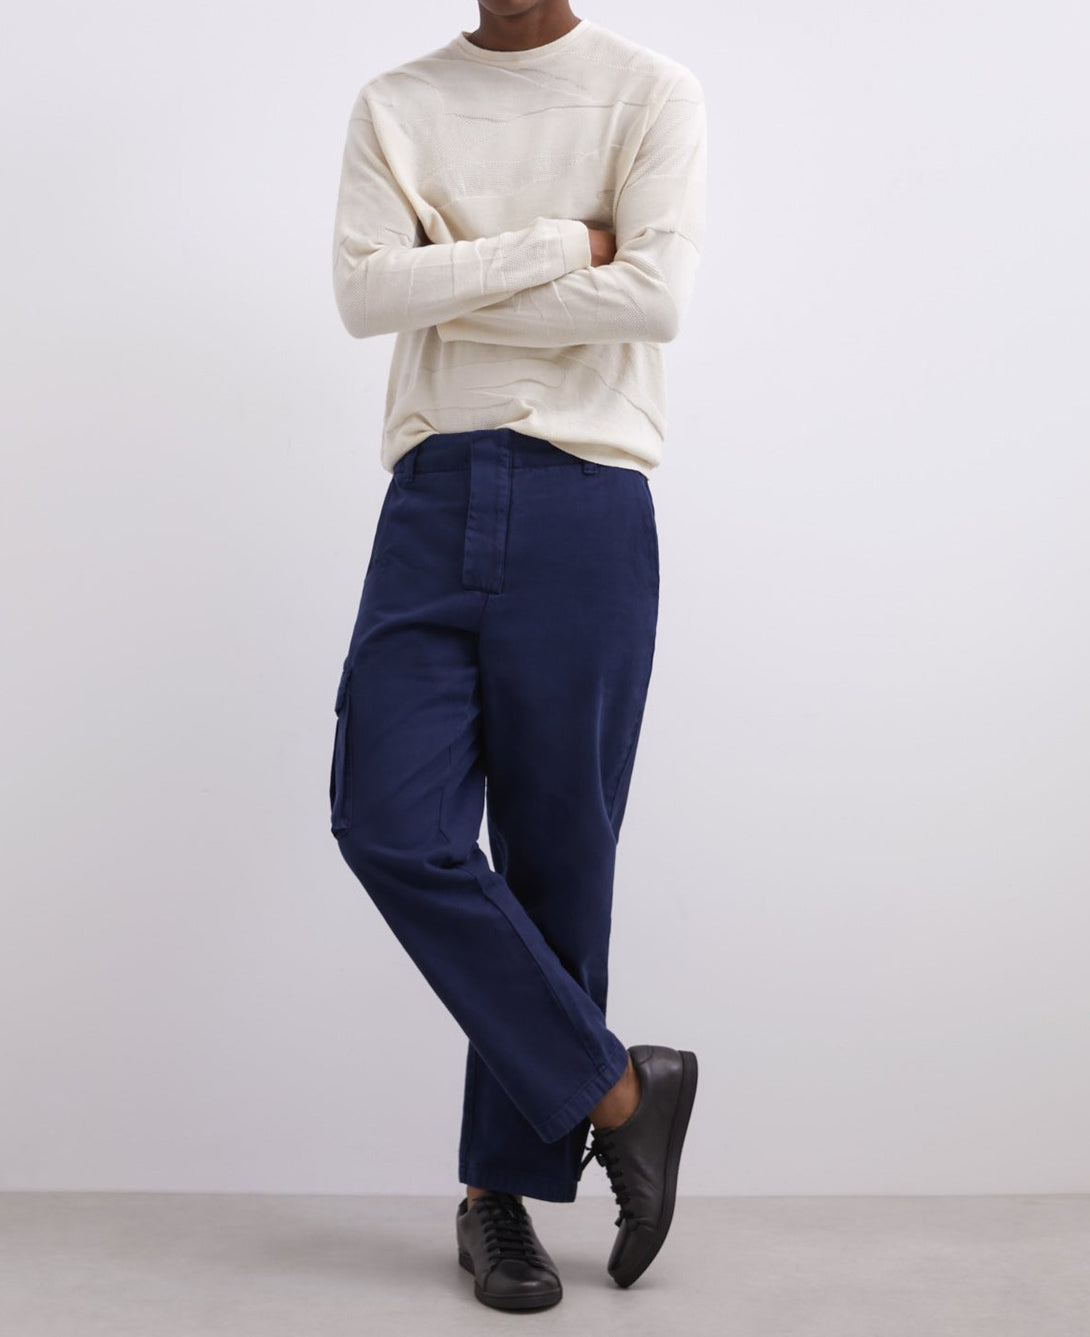 Men Jersey | Beige Cotton Intarsia Round Neck Sweater by Spanish designer Adolfo Dominguez